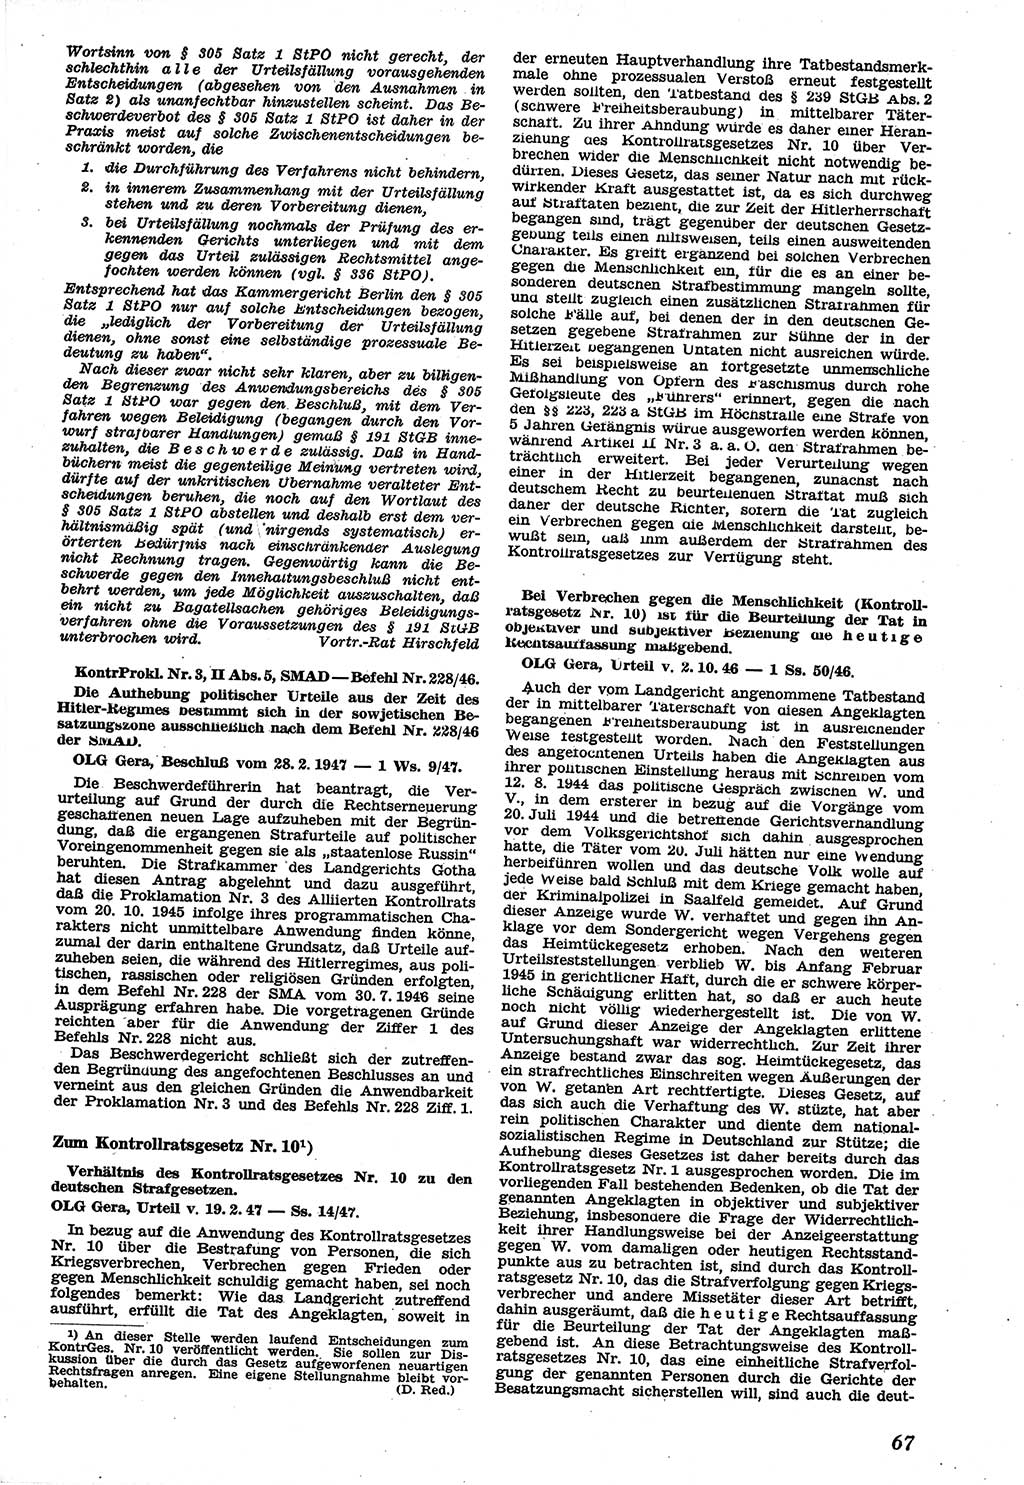 Neue Justiz (NJ), Zeitschrift für Recht und Rechtswissenschaft [Sowjetische Besatzungszone (SBZ) Deutschland], 1. Jahrgang 1947, Seite 67 (NJ SBZ Dtl. 1947, S. 67)